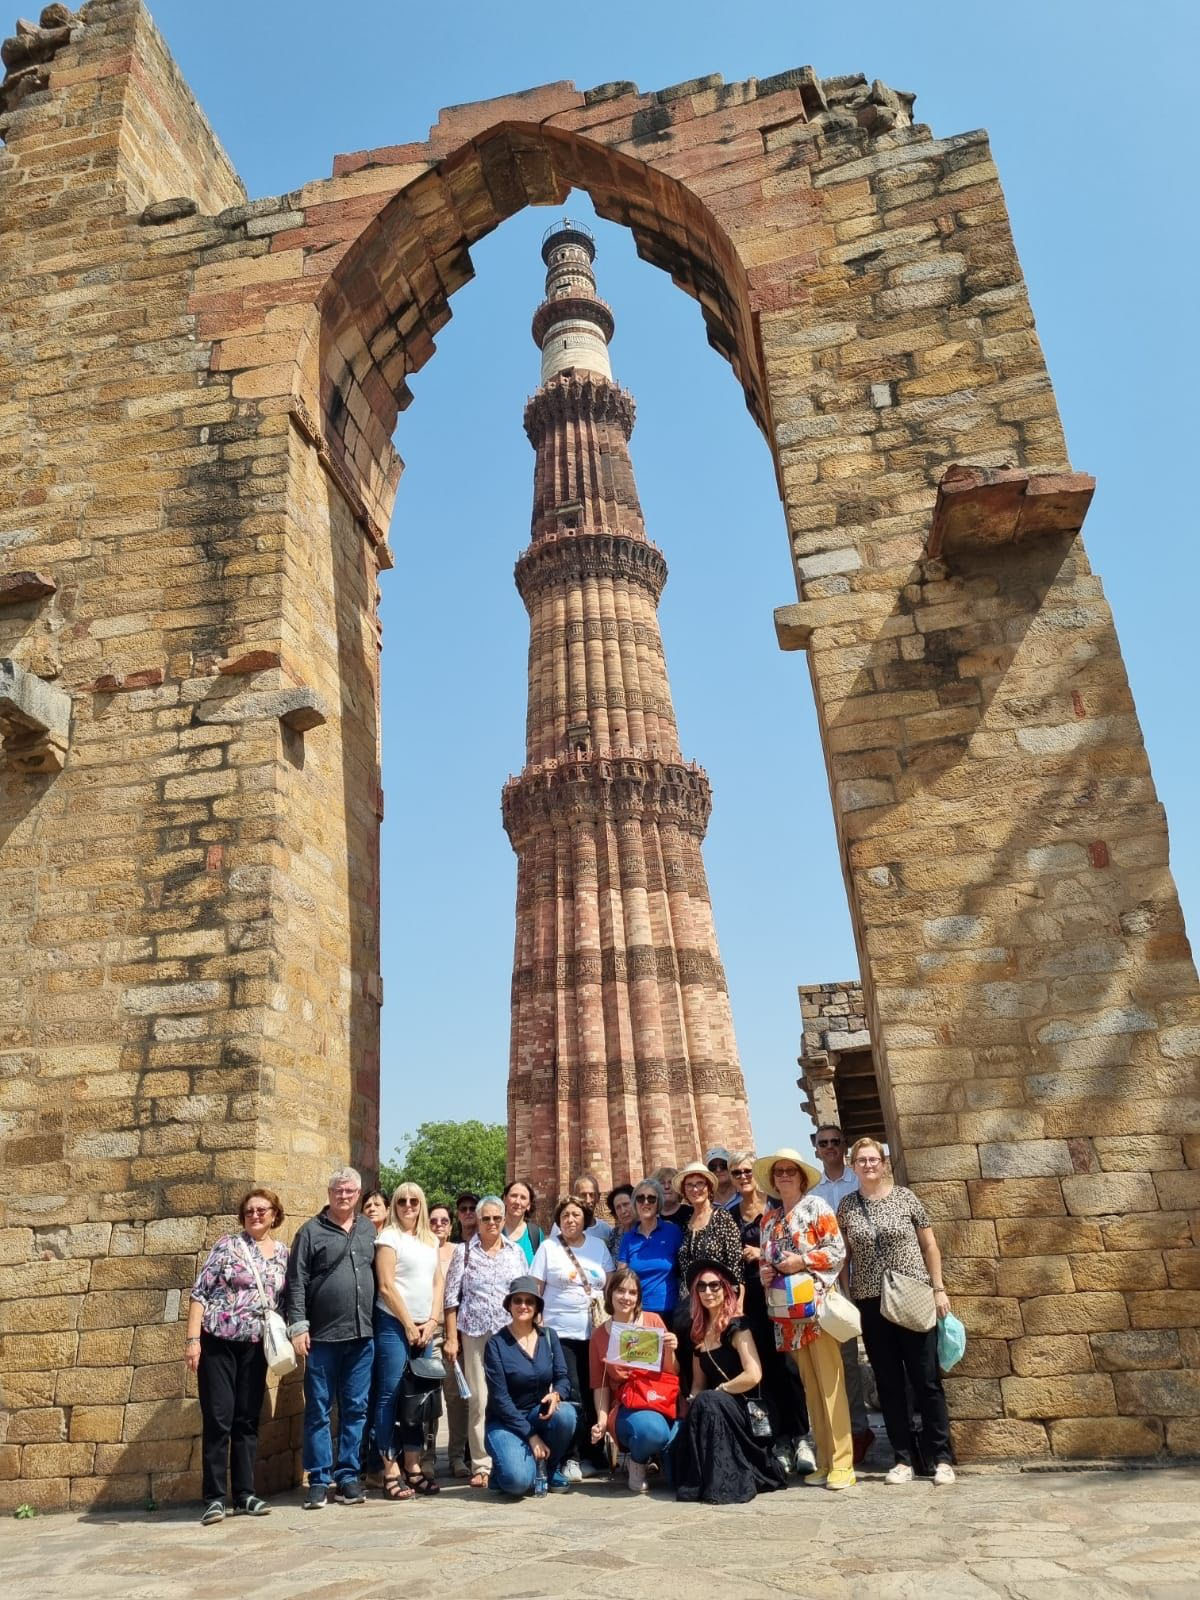 In New Delhi la Qutub Minar